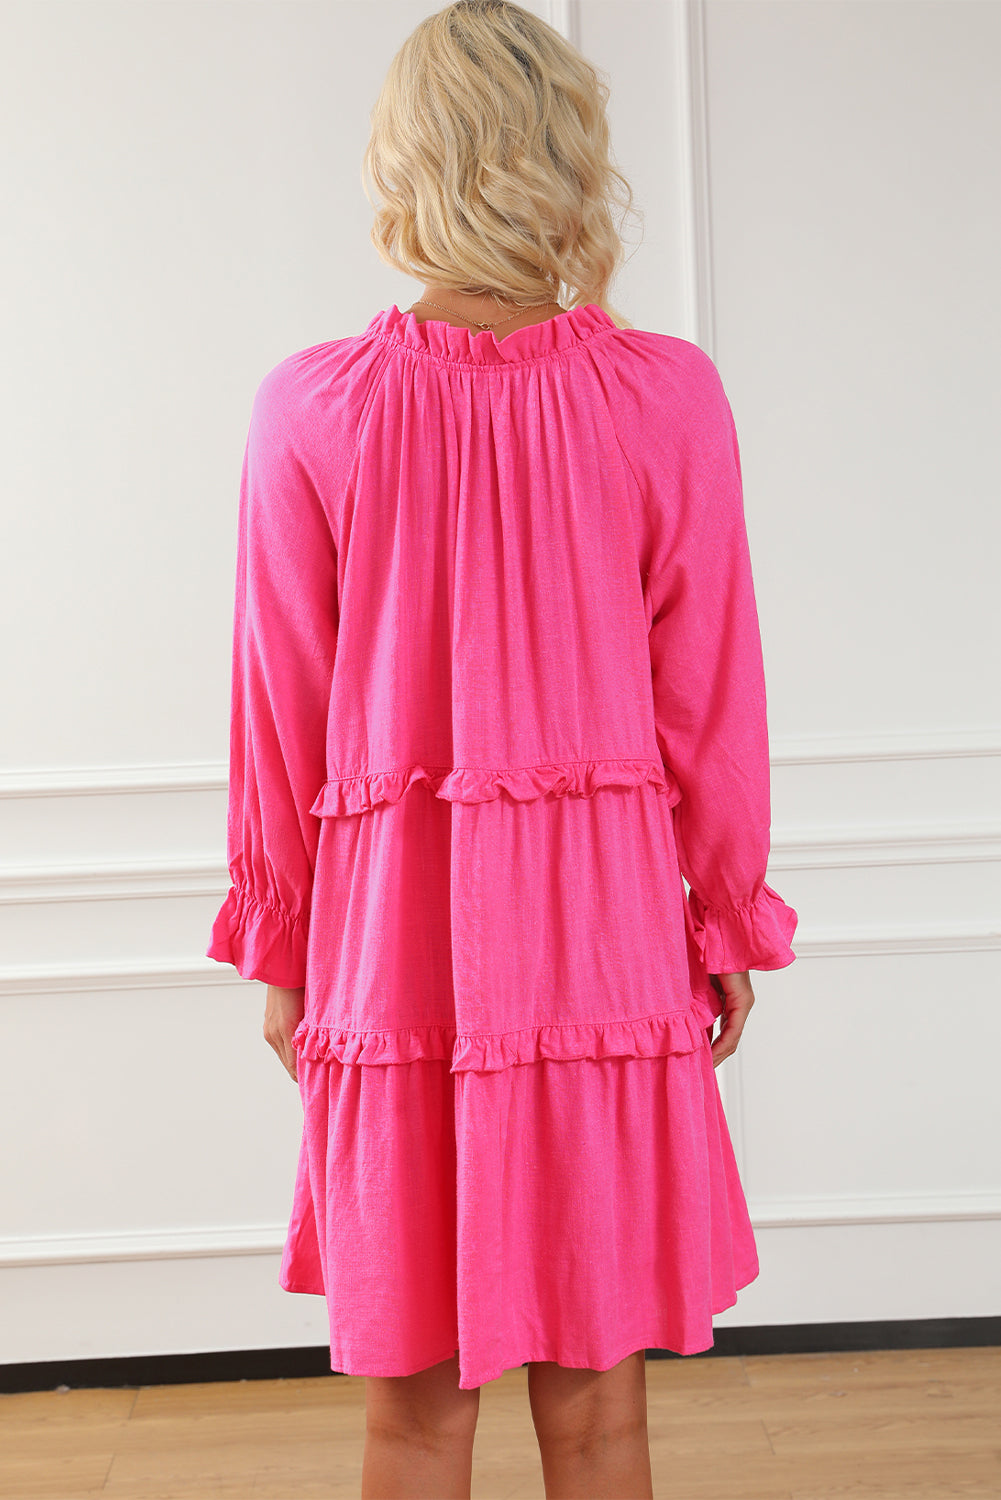 Lockeres, lockeres Babydoll-Kleid mit geteiltem V-Ausschnitt und Rüschen in Rose